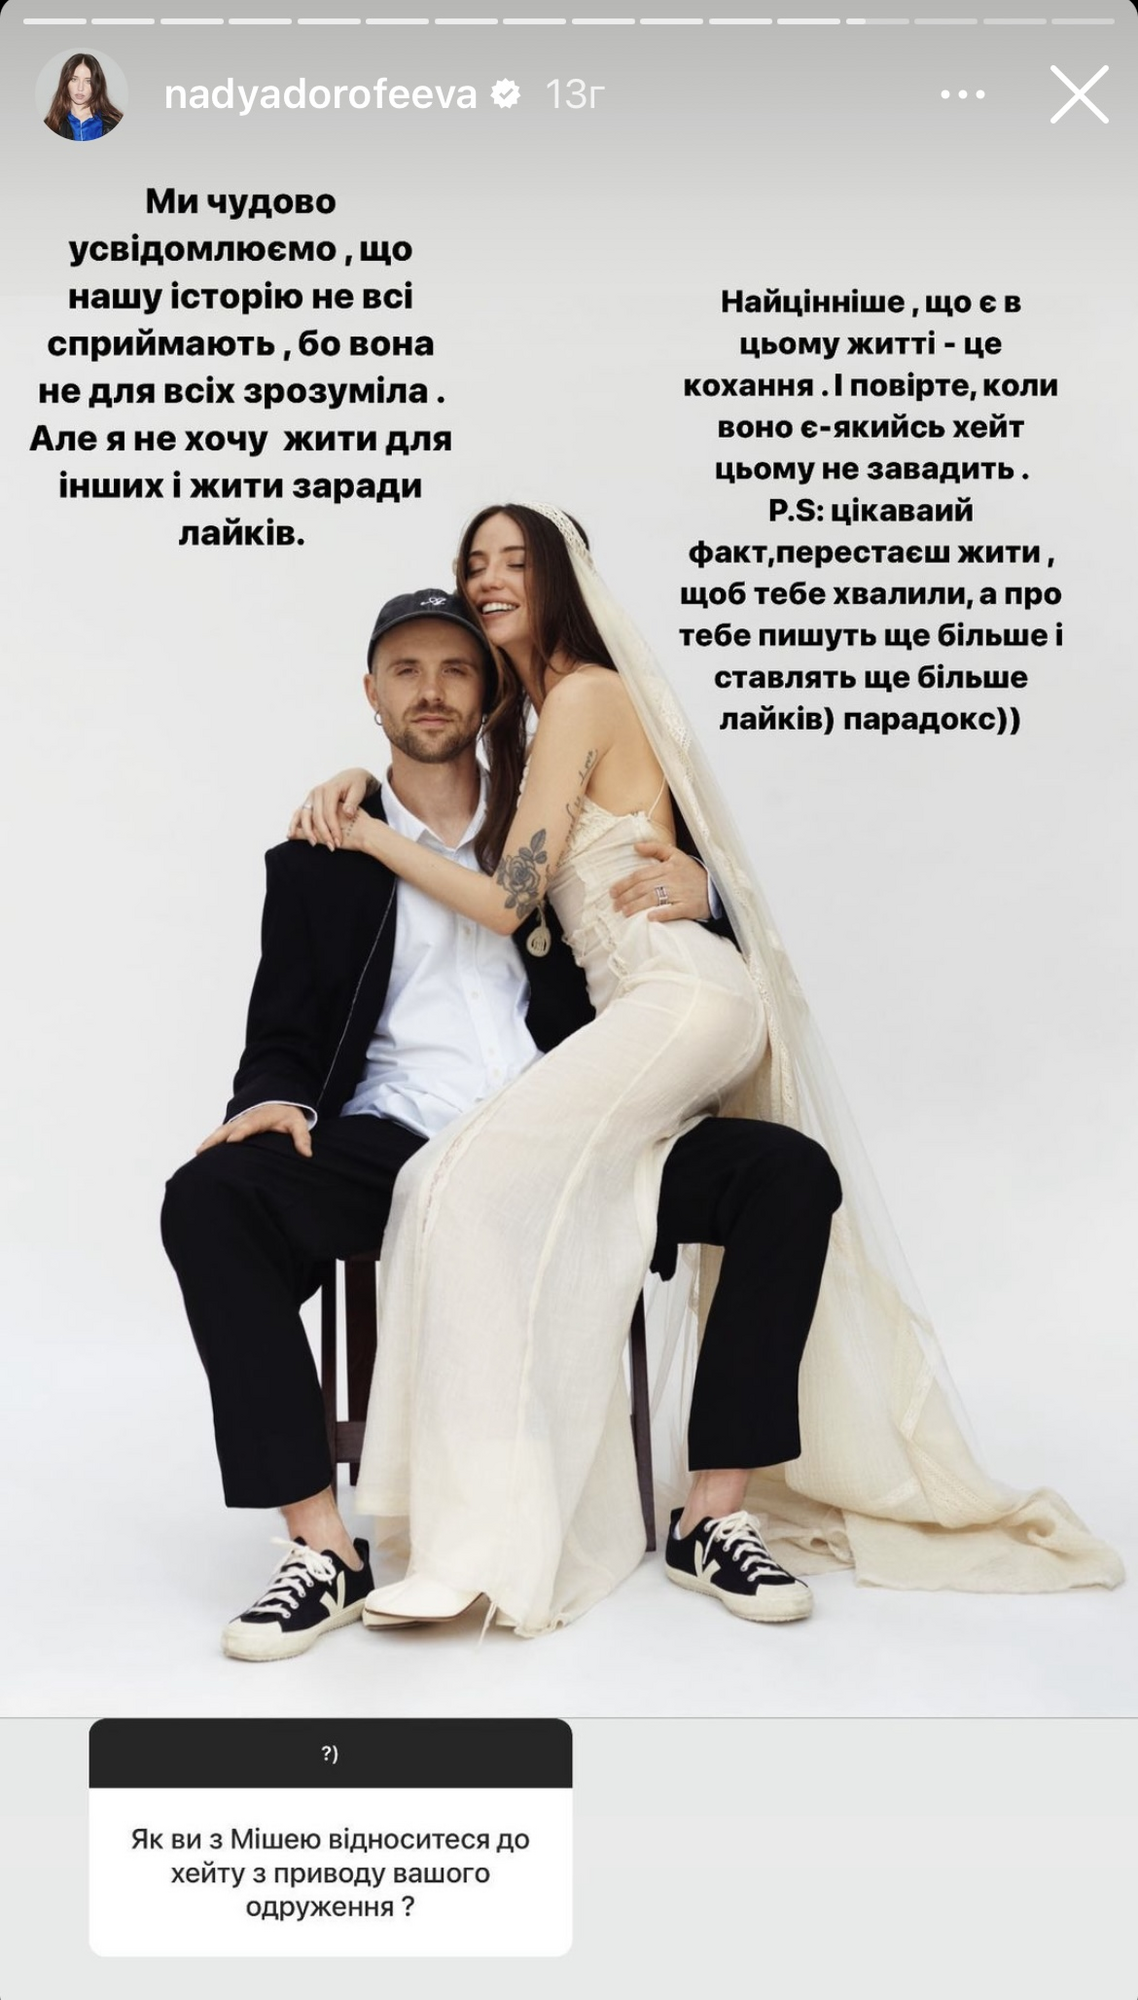 "Не хочу жить для других": Дорофеева ответила на хейт из-за свадьбы с Кацуриным и призналась в проблемах с самооценкой